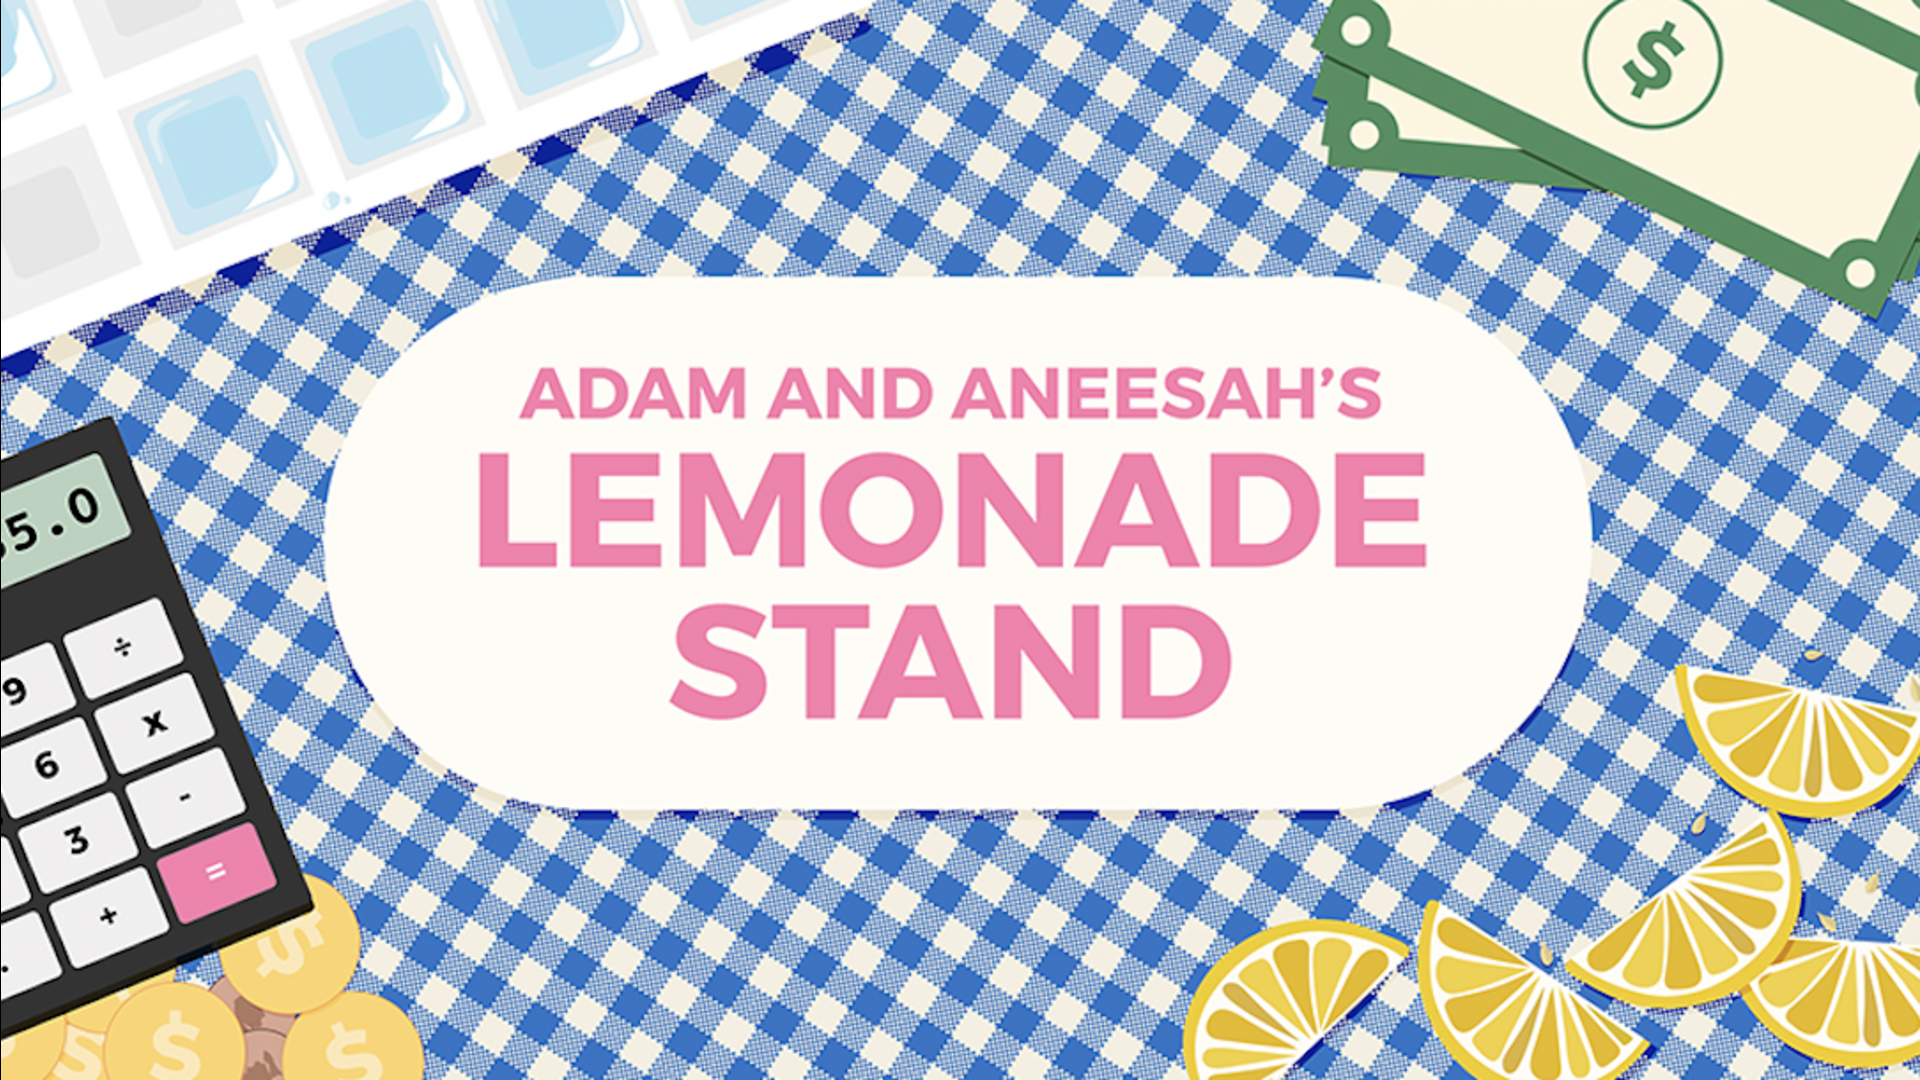 Adam and Aneesah’s Lemonade Stand